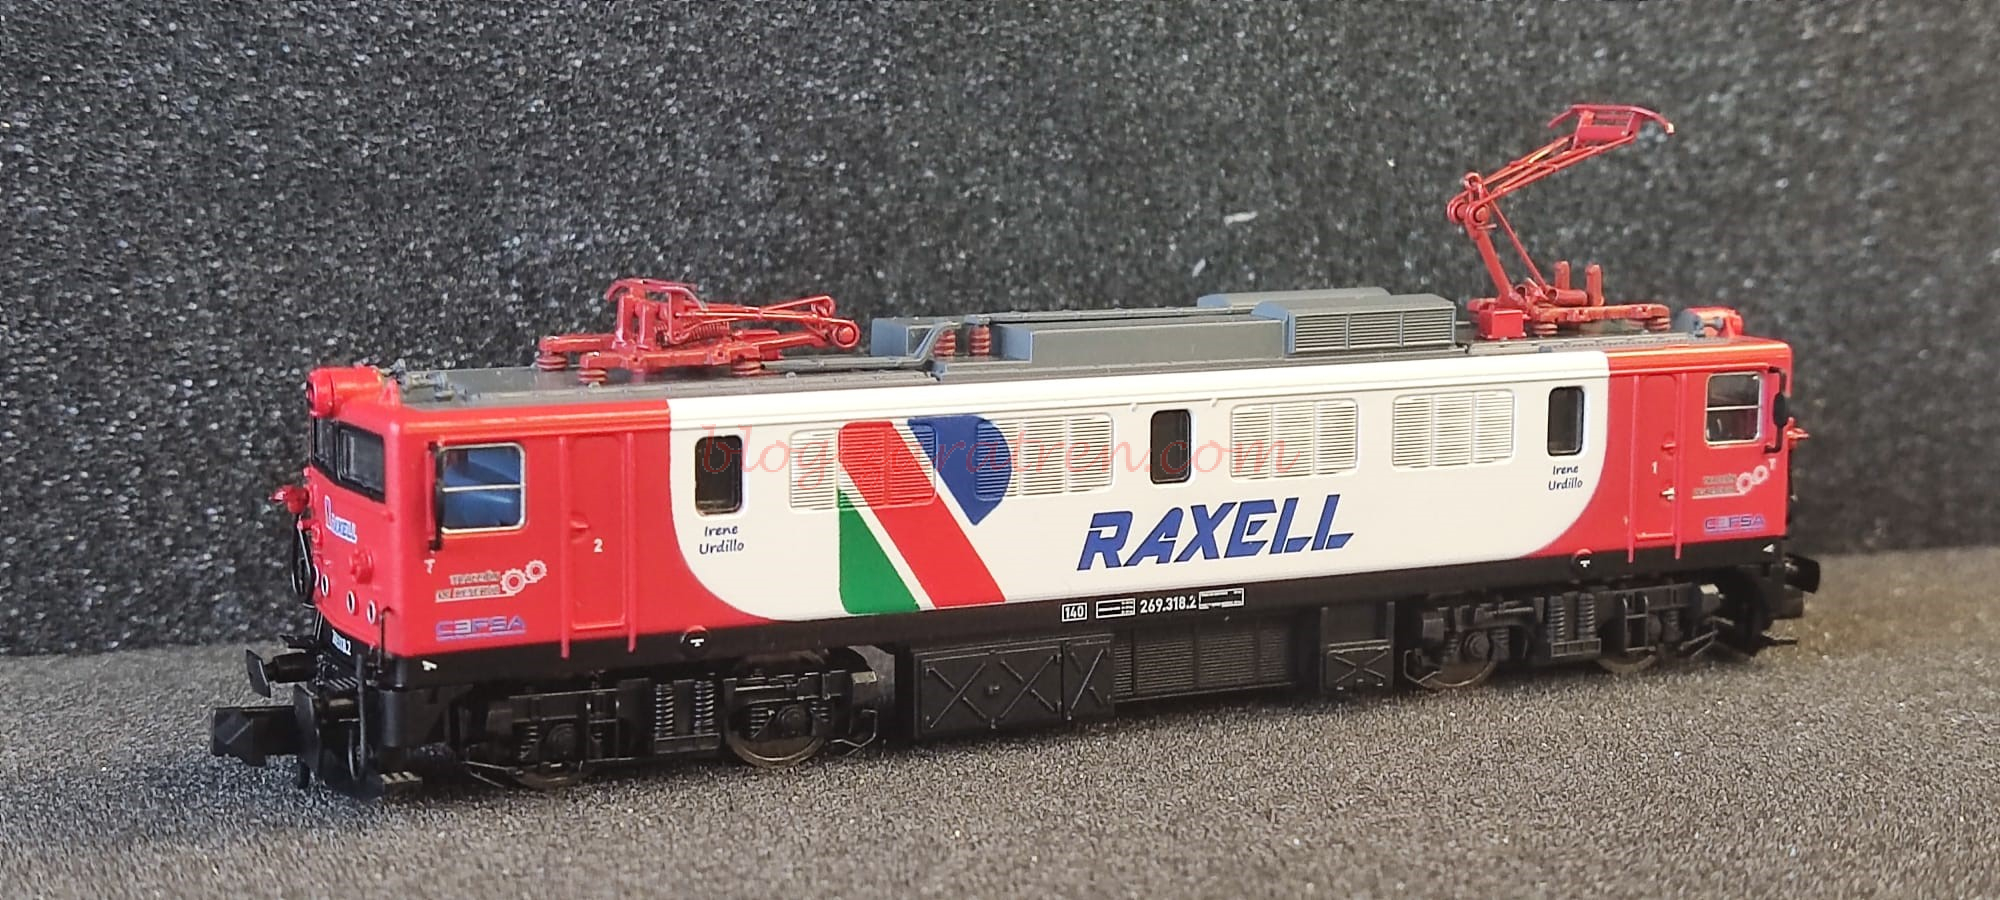 Arnold – Locomotora Elect. 269-318-2, Compañía privada RAXELL, , Epoca VI, Escala N, Analógica. Ref: HNS2607